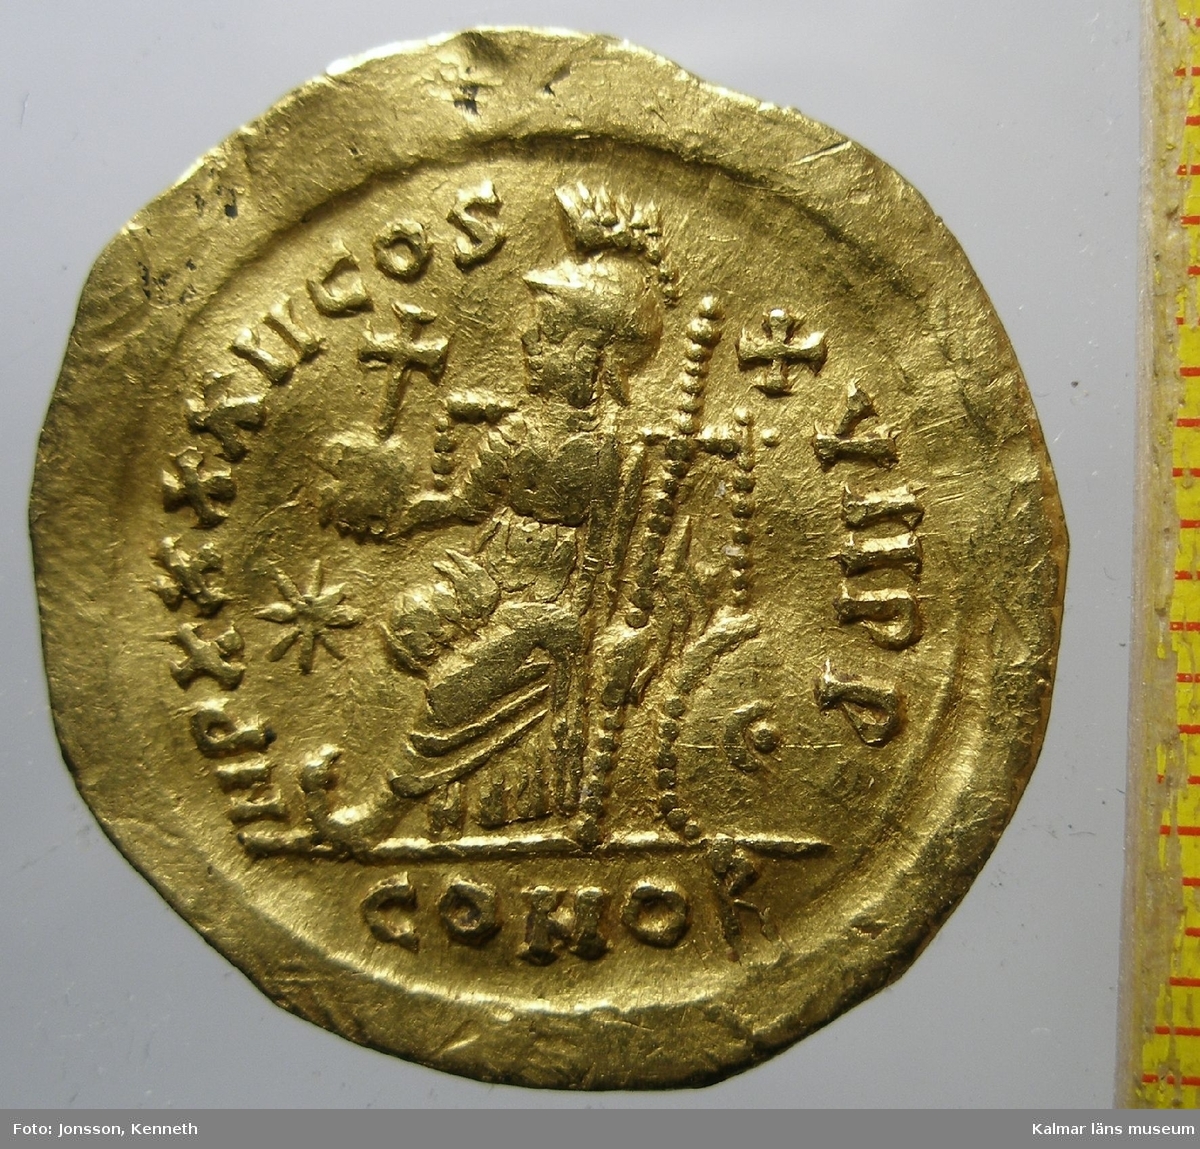 KLM 25381 Mynt, solidus, guld. Präglat för Theodosius II (408-450). Bestämning: F 294, RICX324.